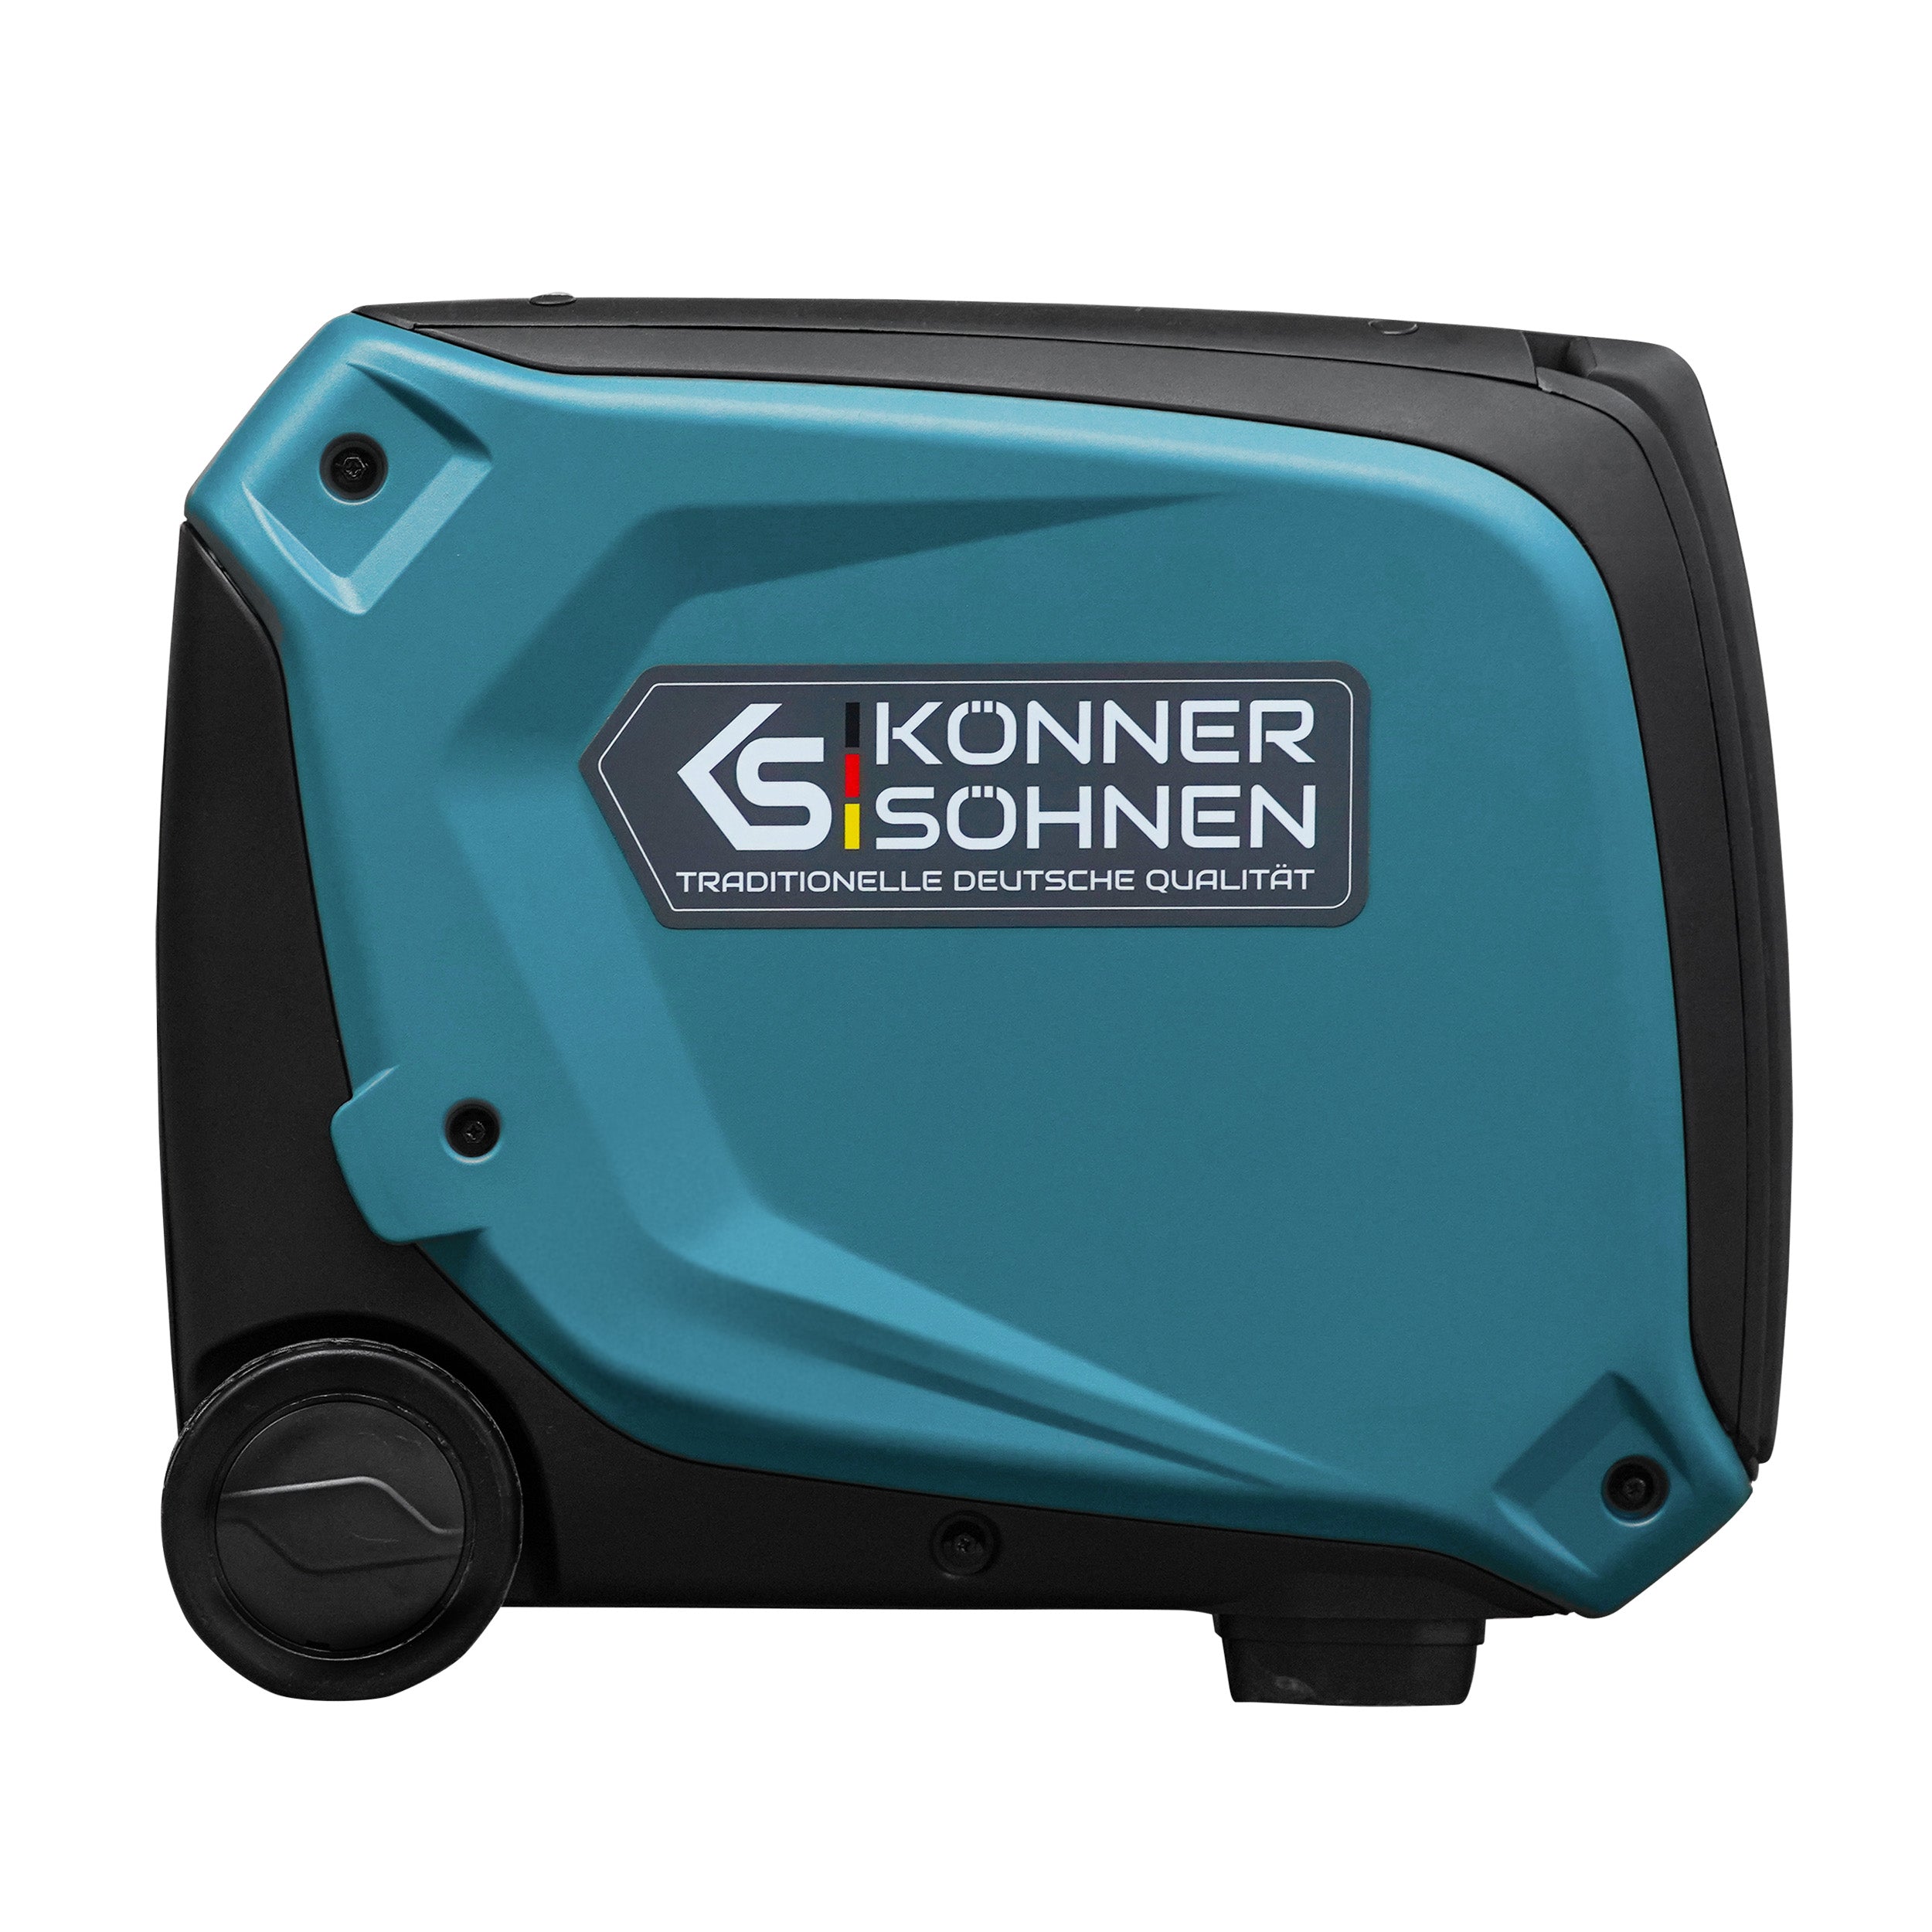 Générateur-onduleur dans la boîte anti-bruit KS 4000iE S